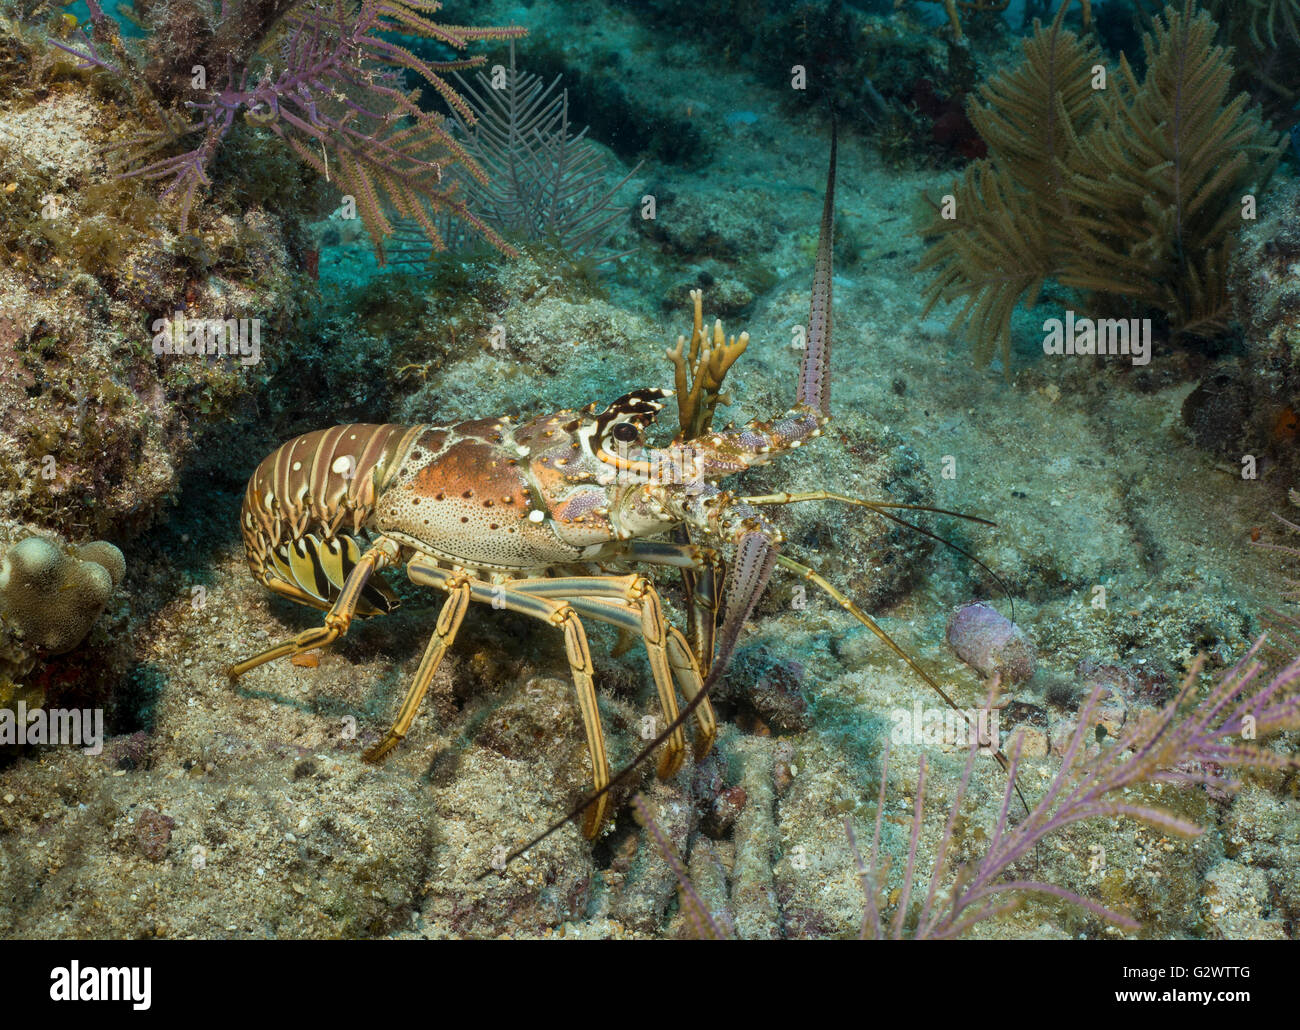 Una langosta del caribe ventures fuera de la protección de los arrecifes de coral, las antenas se agitan como machetes. Foto de stock